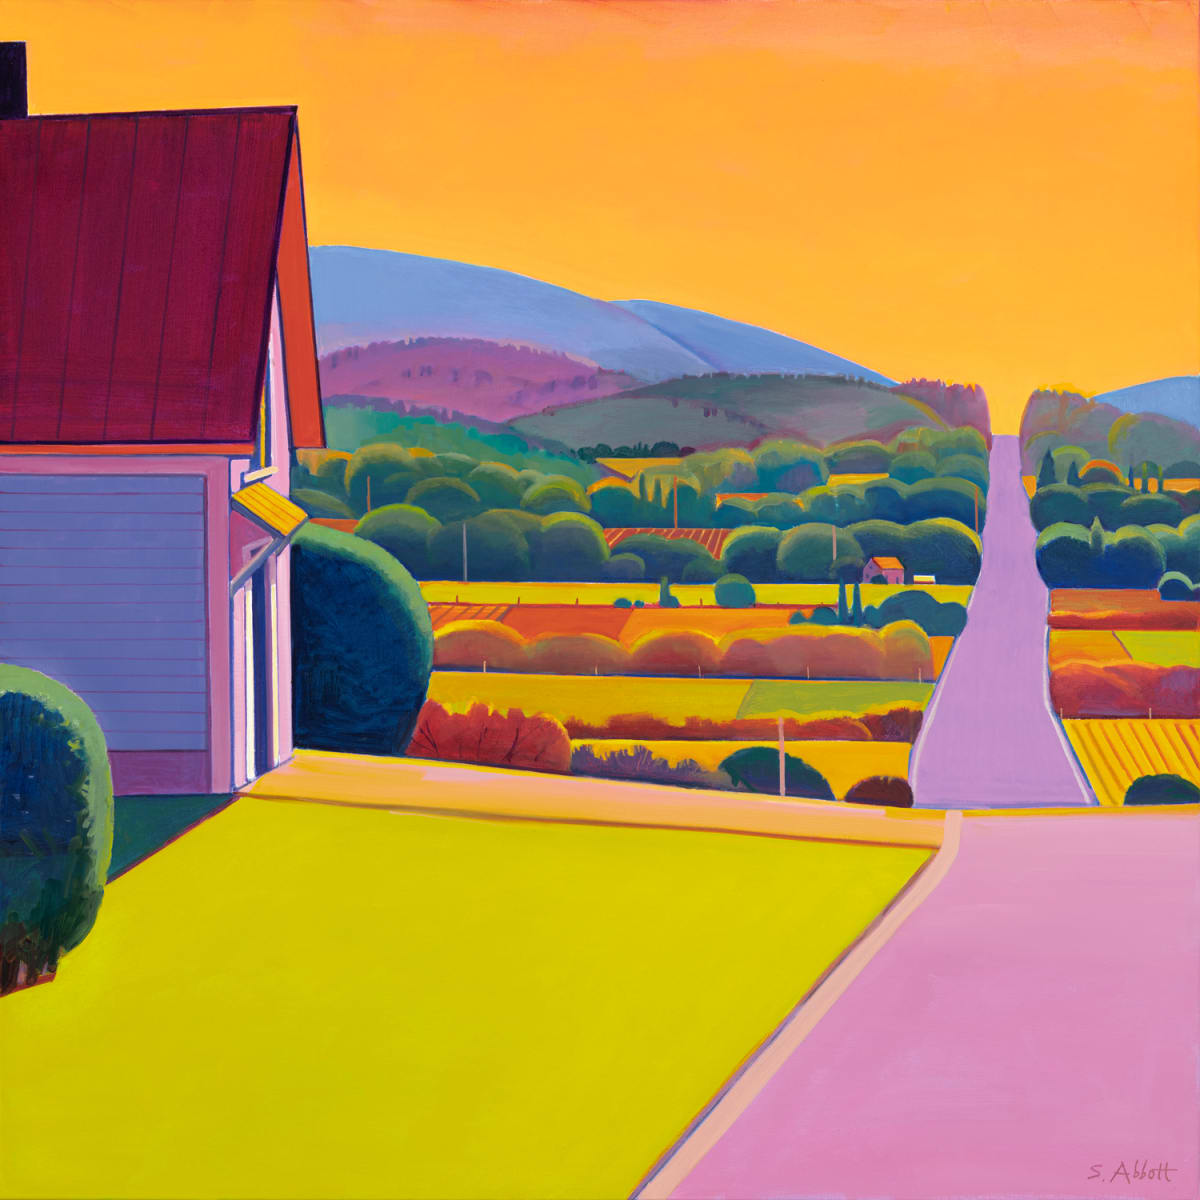 "Road Through Summer" by Susan Abbott 